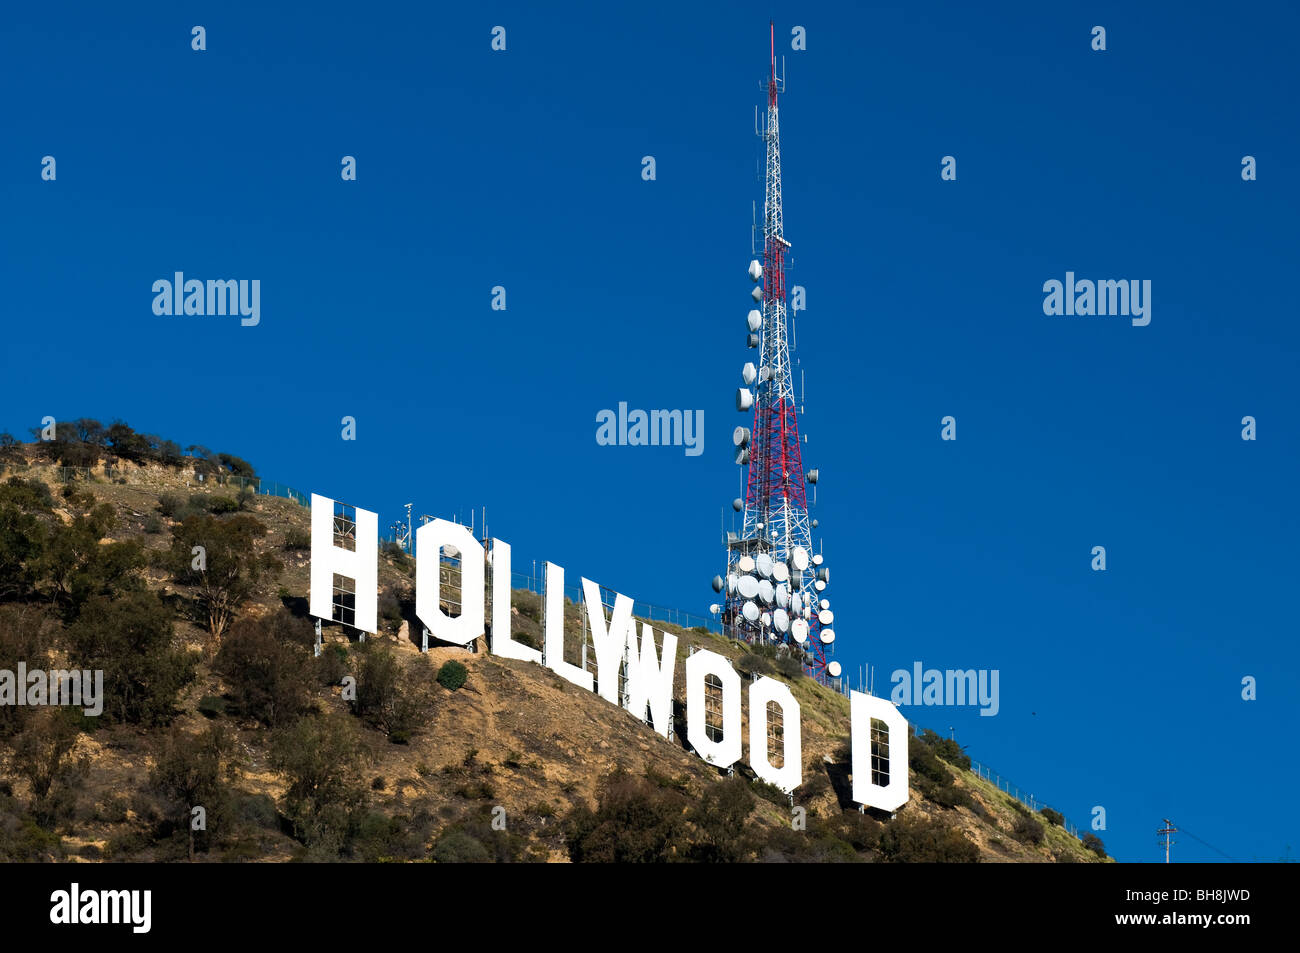 La señal blanca de Hollywood, Los Ángeles, California, Estados Unidos. Foto de stock